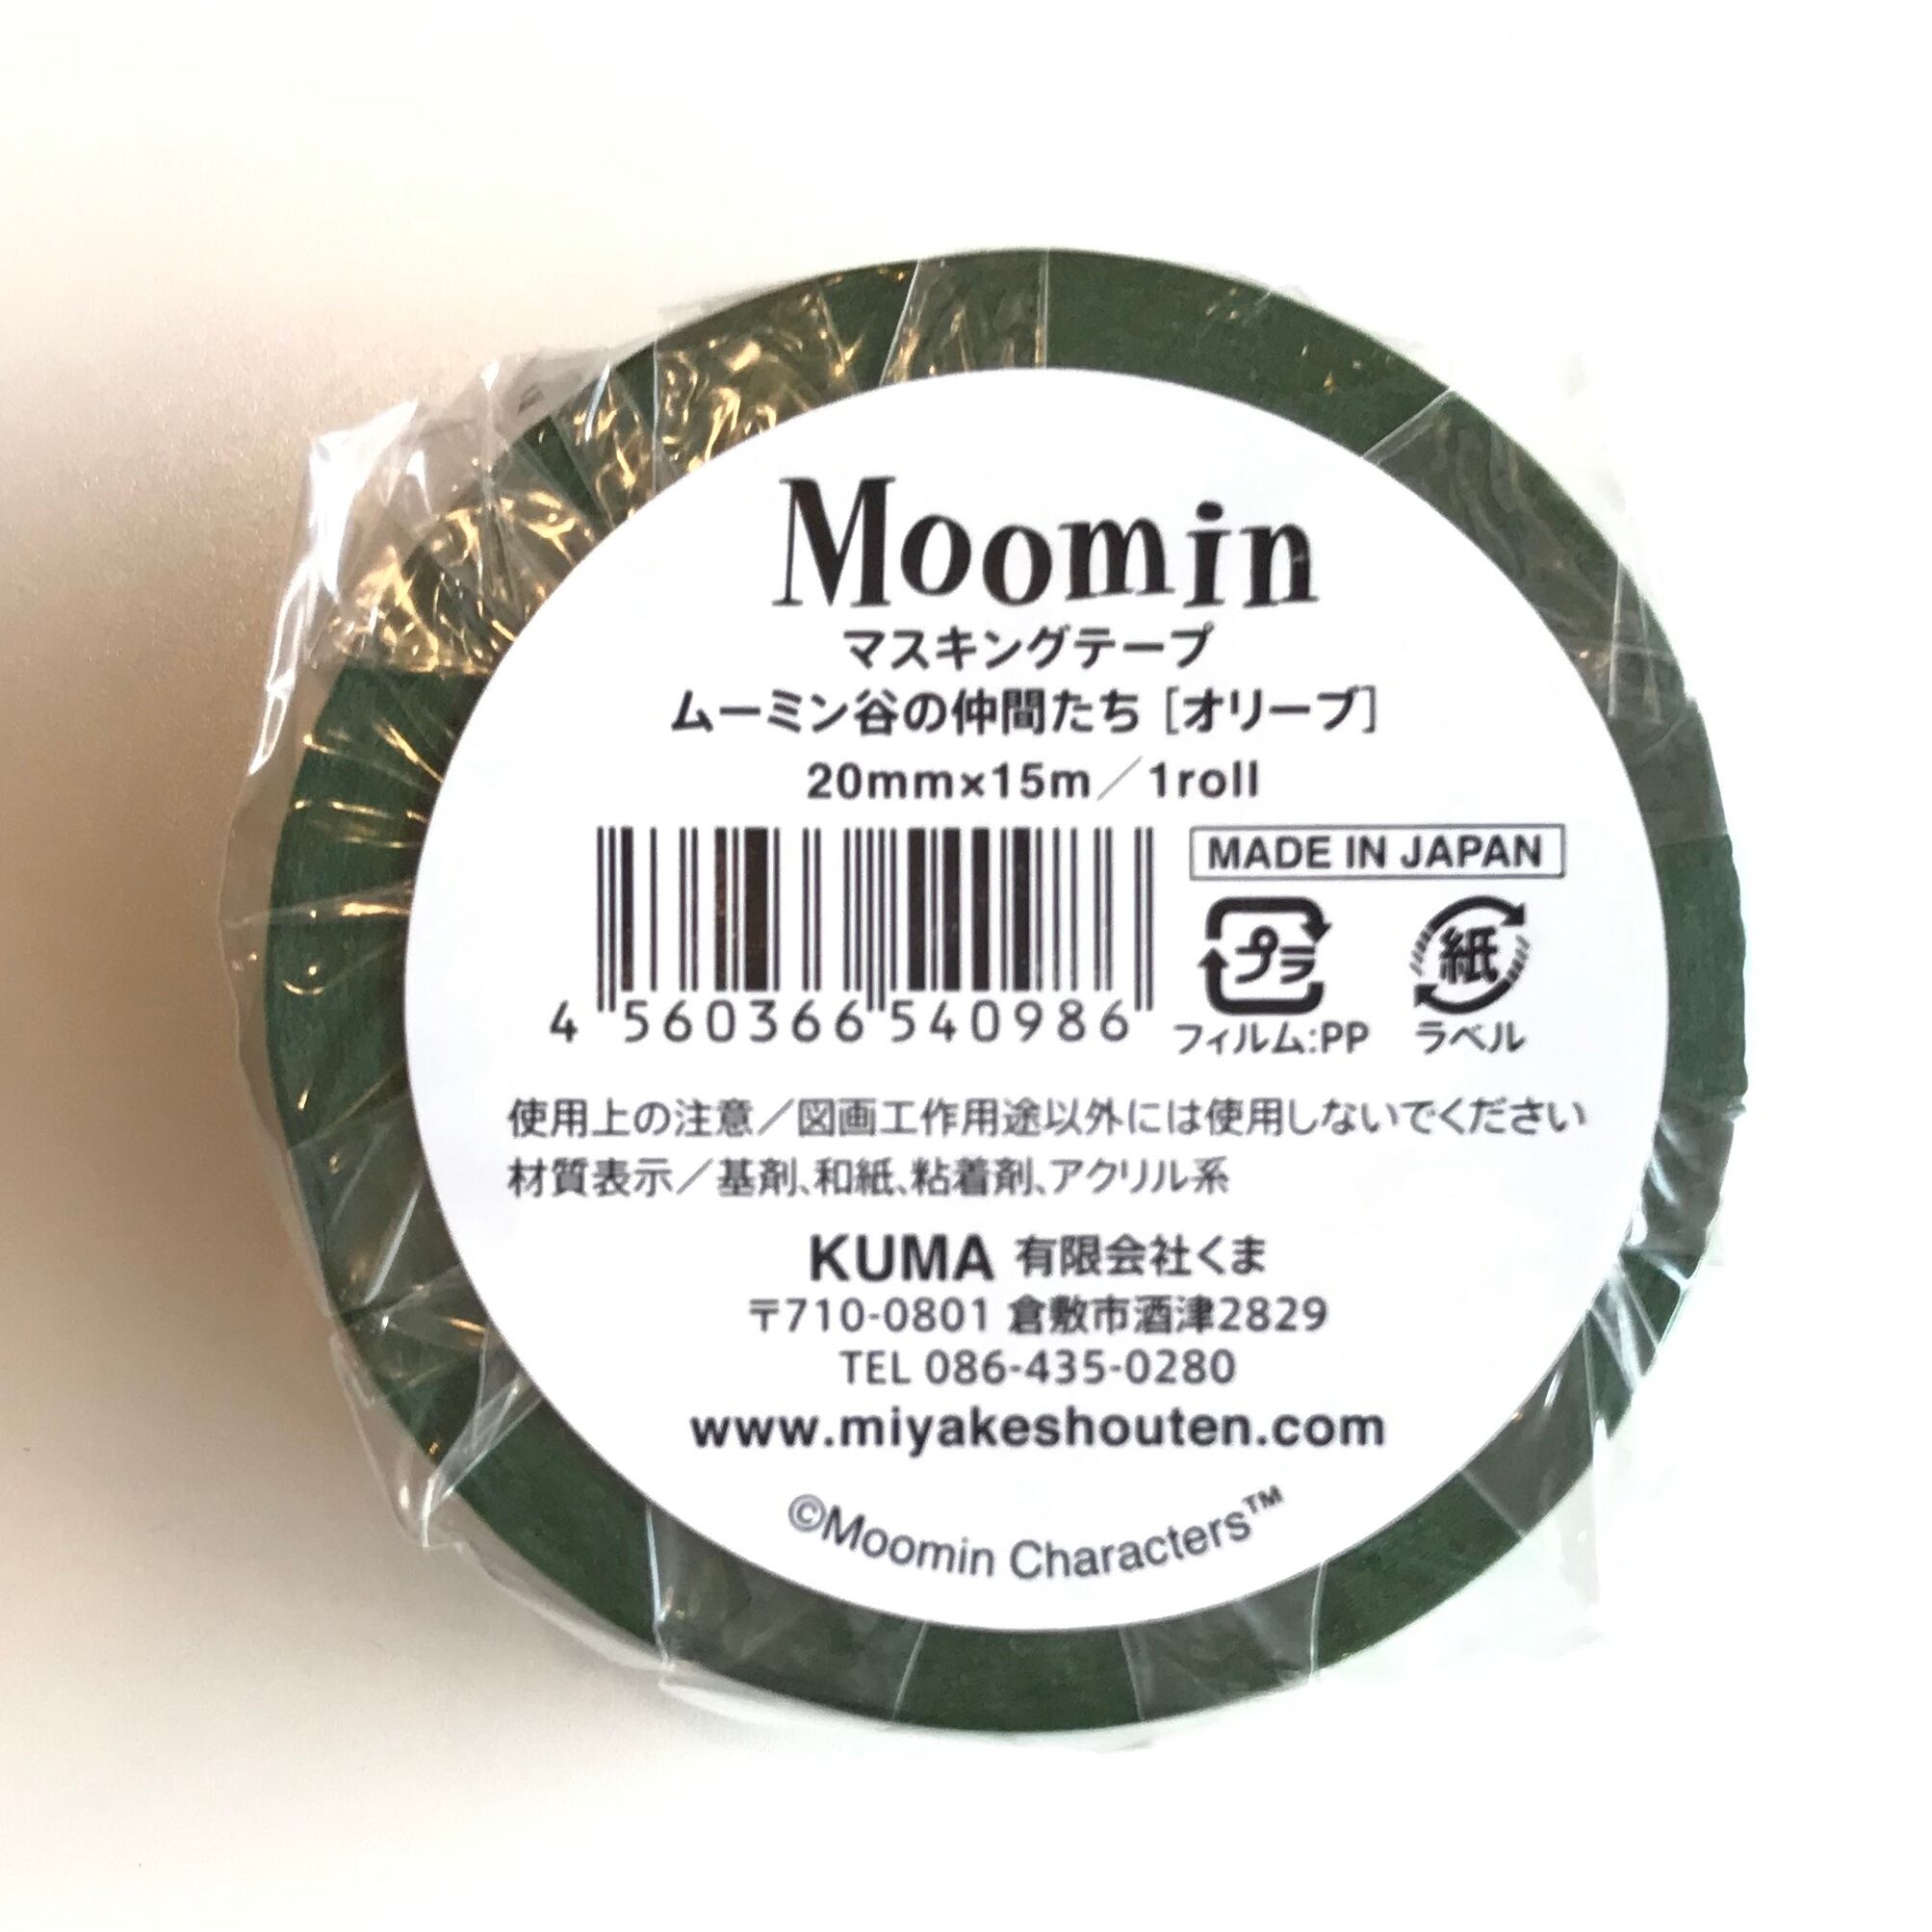 ムーミン × マスキングテープ / ムーミン谷の仲間たちシリーズ